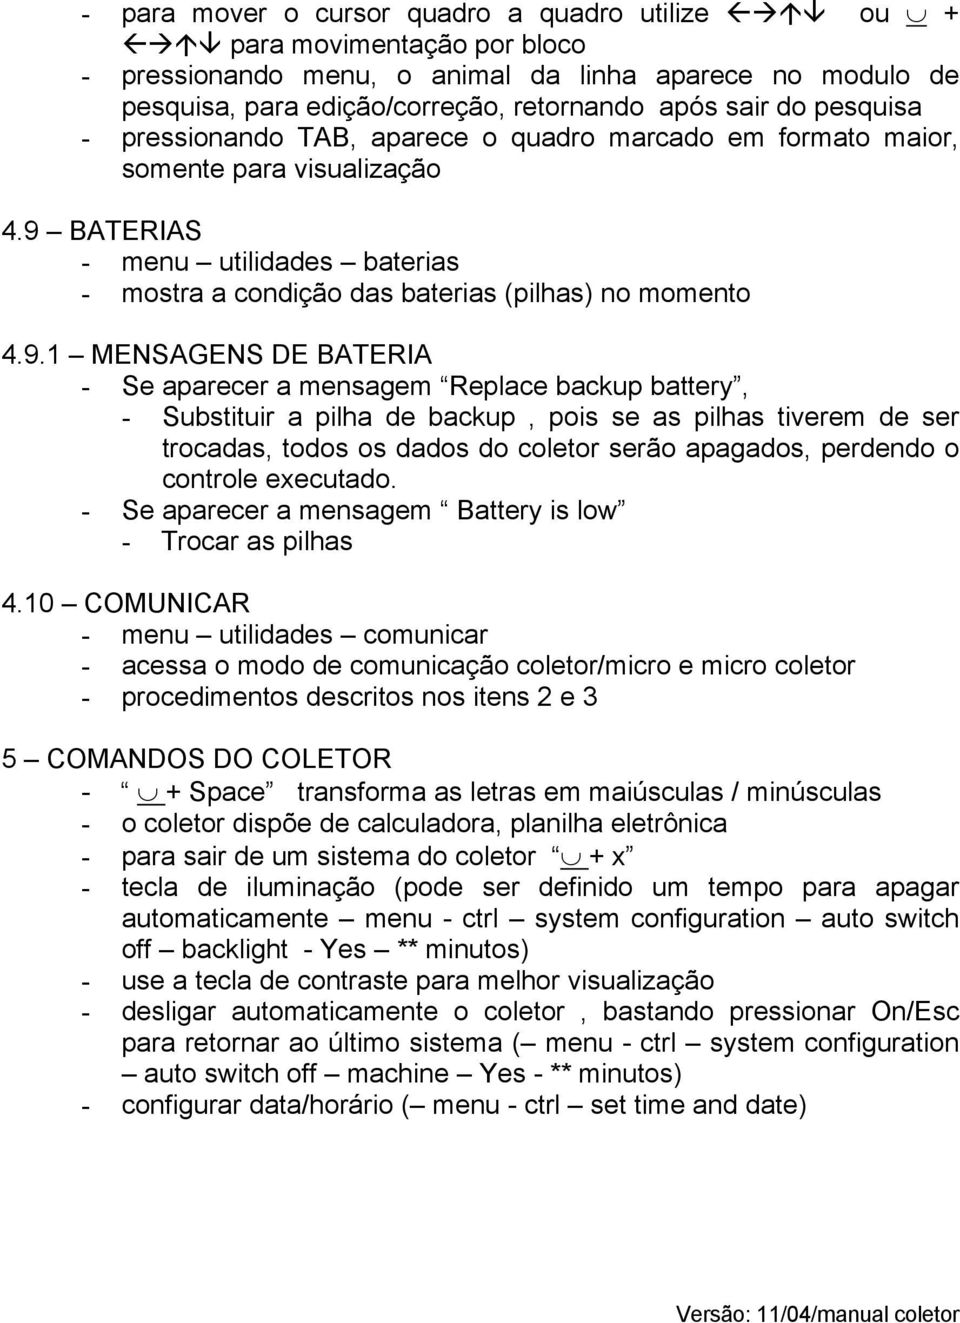 BATERIAS - menu utilidades baterias - mostra a condição das baterias (pilhas) no momento 4.9.